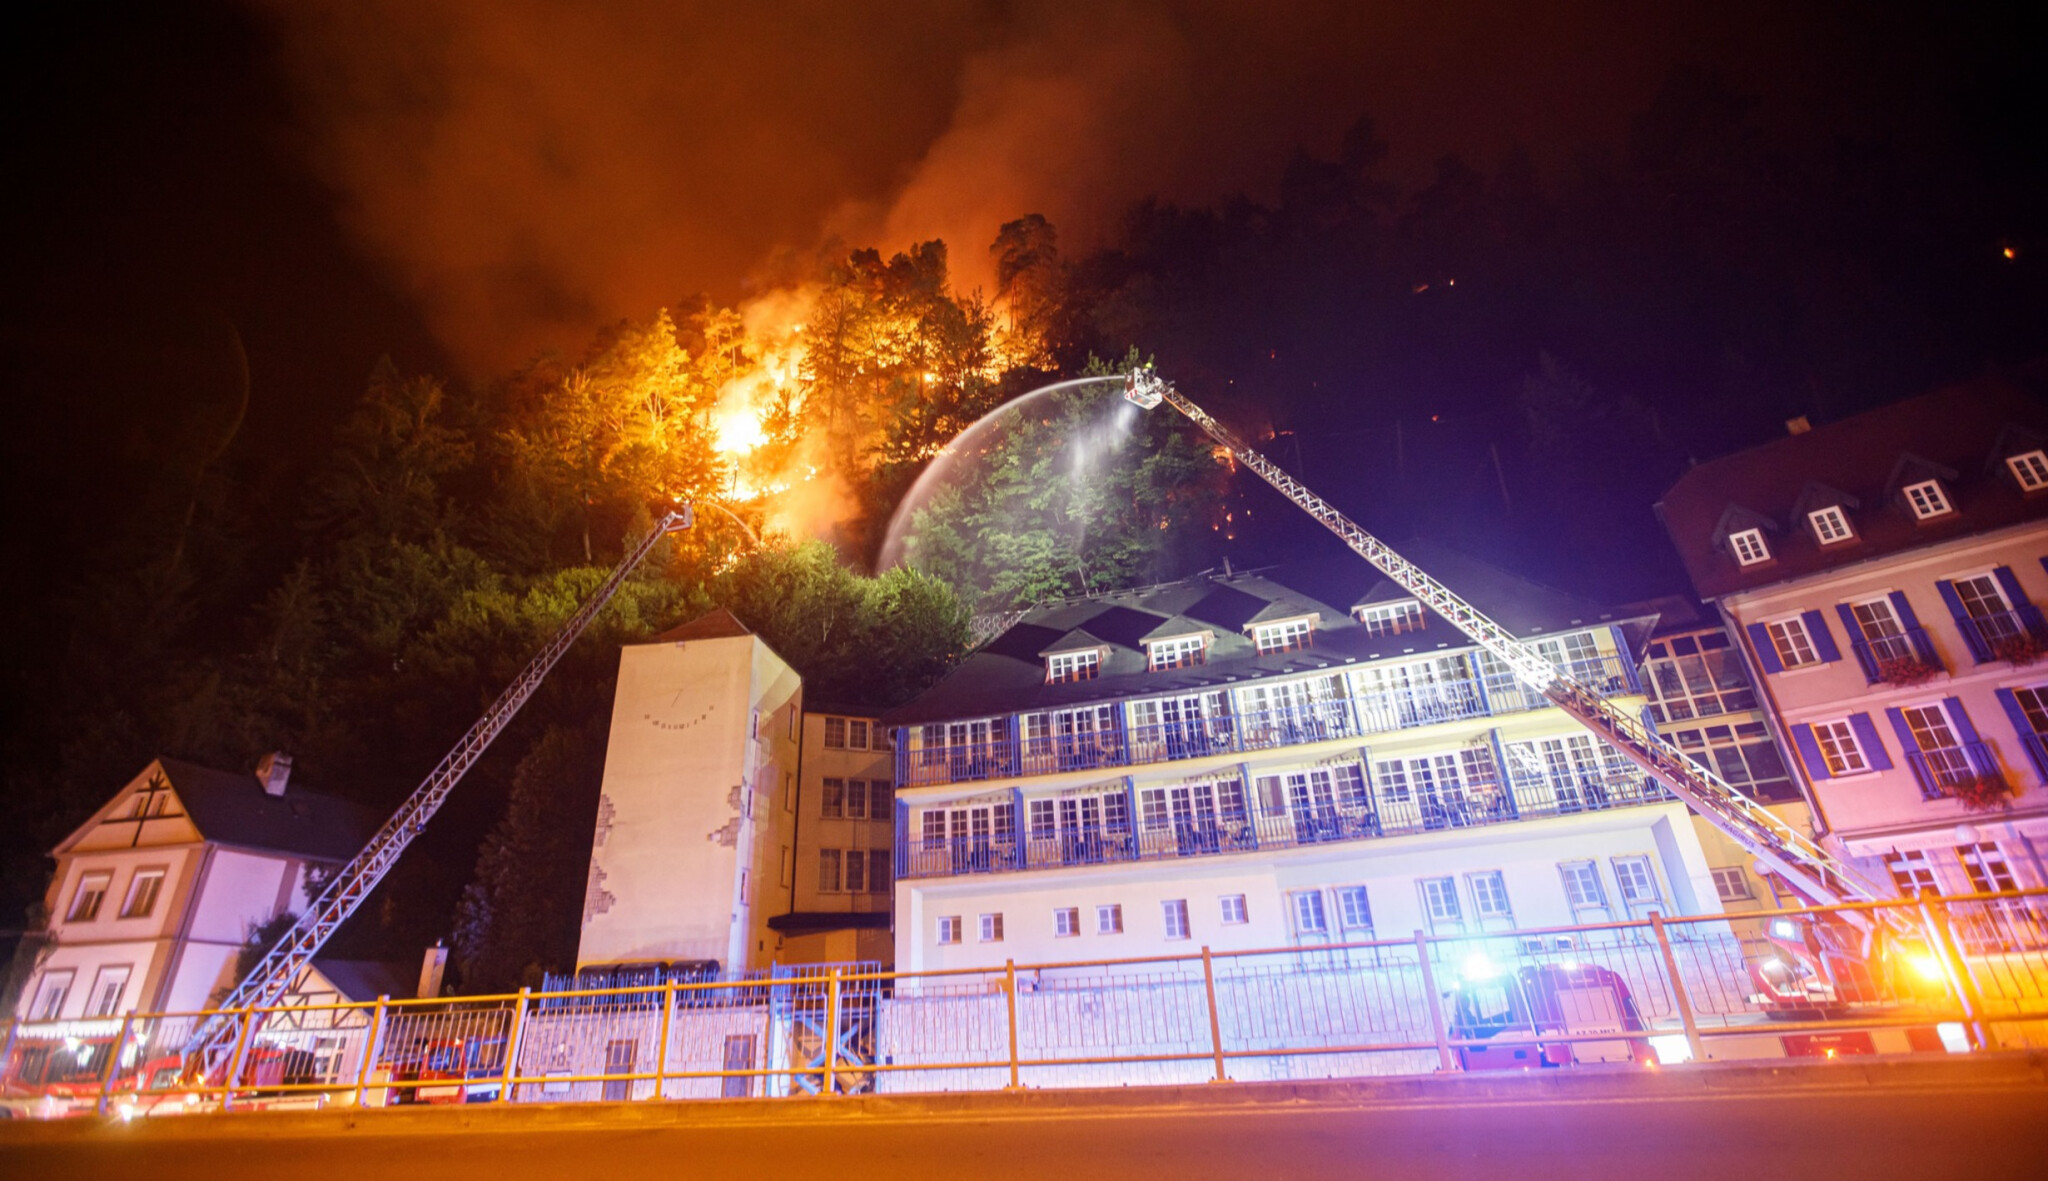 Investice v plamenech. Místo výdělků bojují noví hoteliéři v Hřensku o přežití